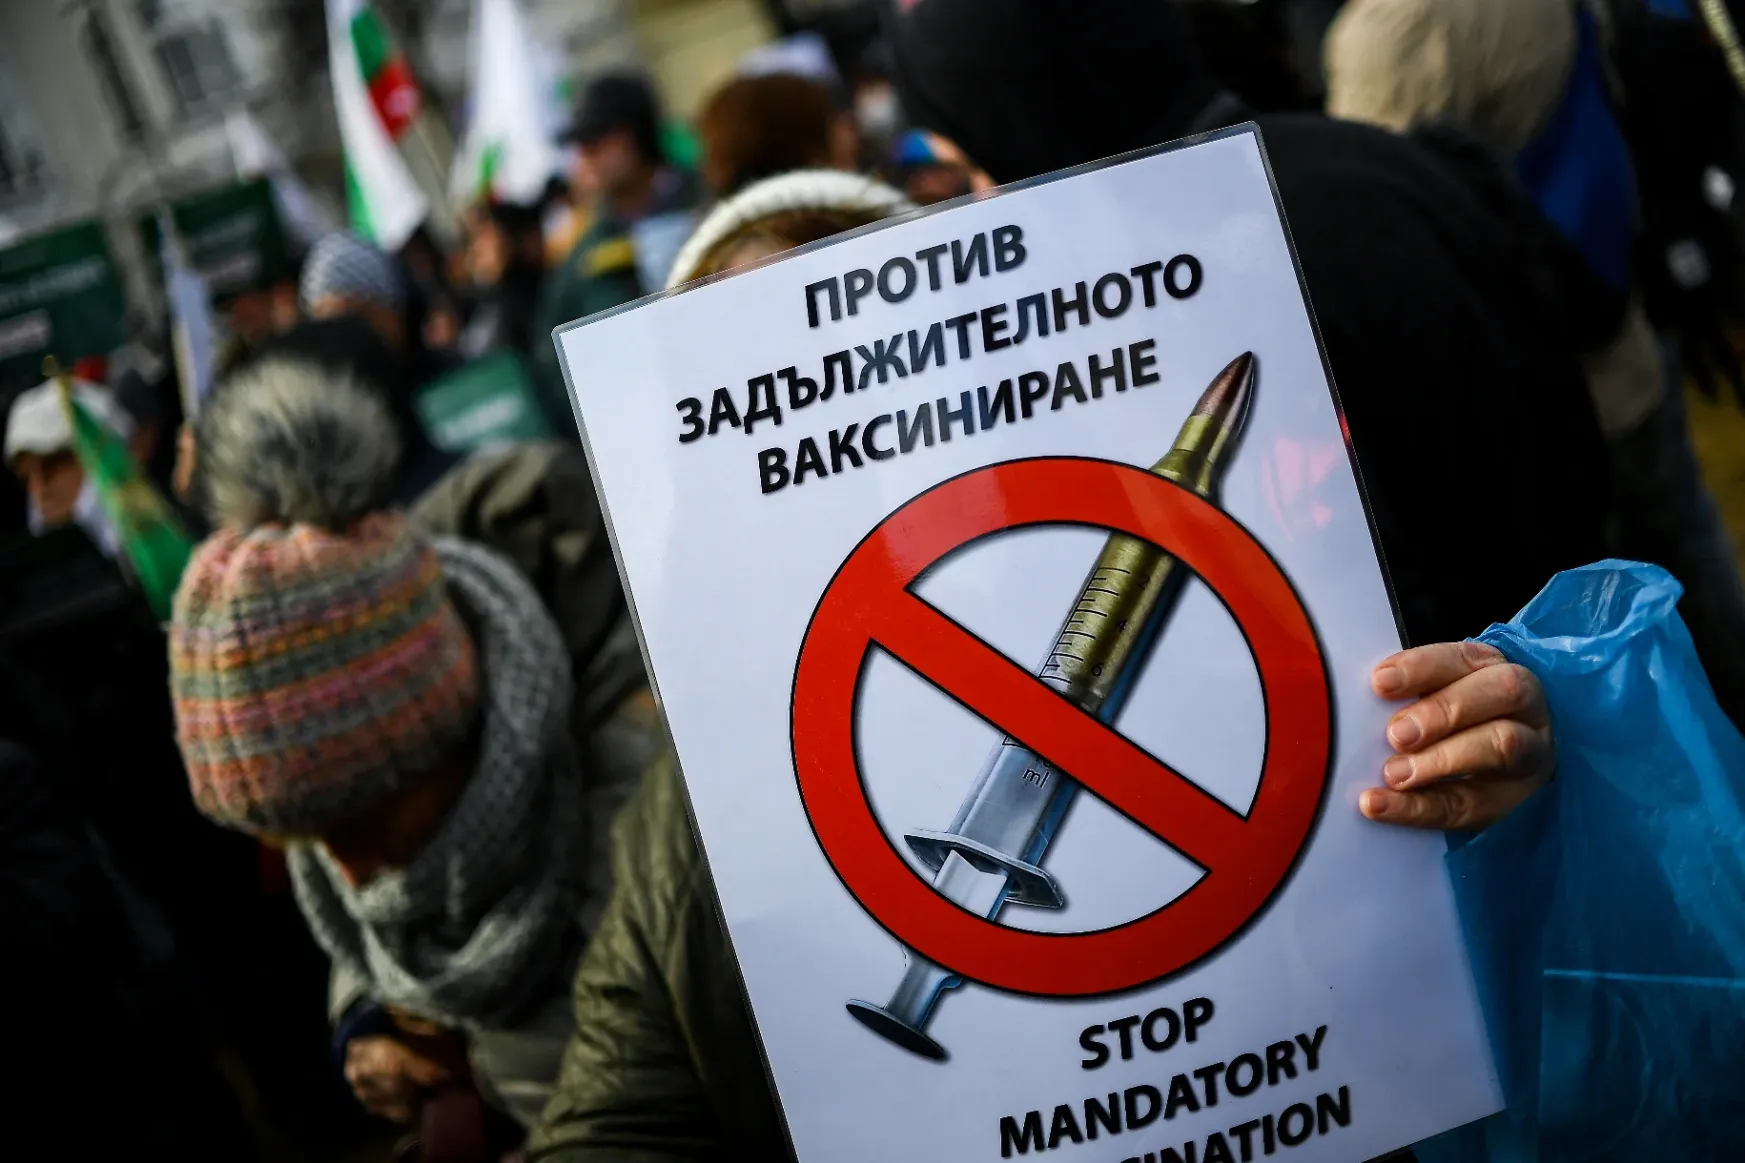 Fact-check: Nem Bulgária az első, ahol influenzaként kezelik a Covidot